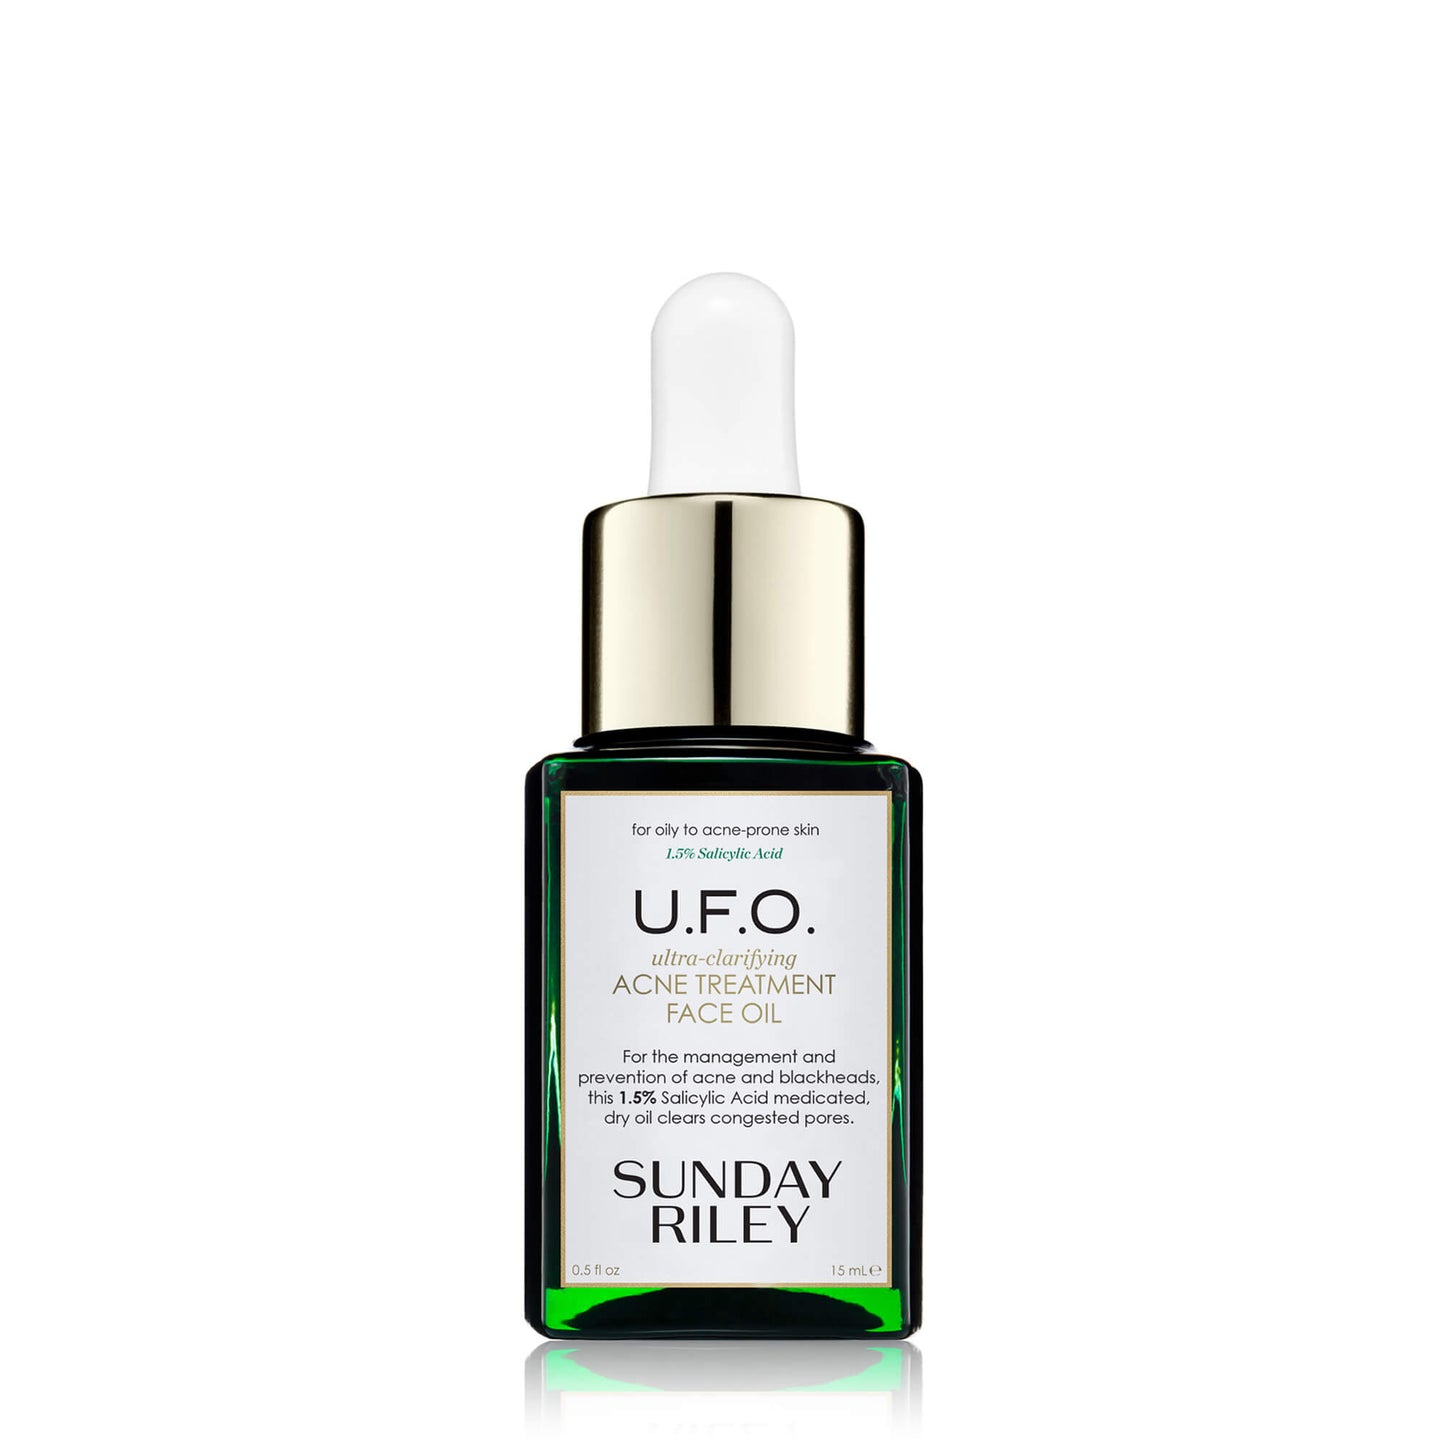 U.F.O. Acne Treatment Face Oil 15ml pack shot